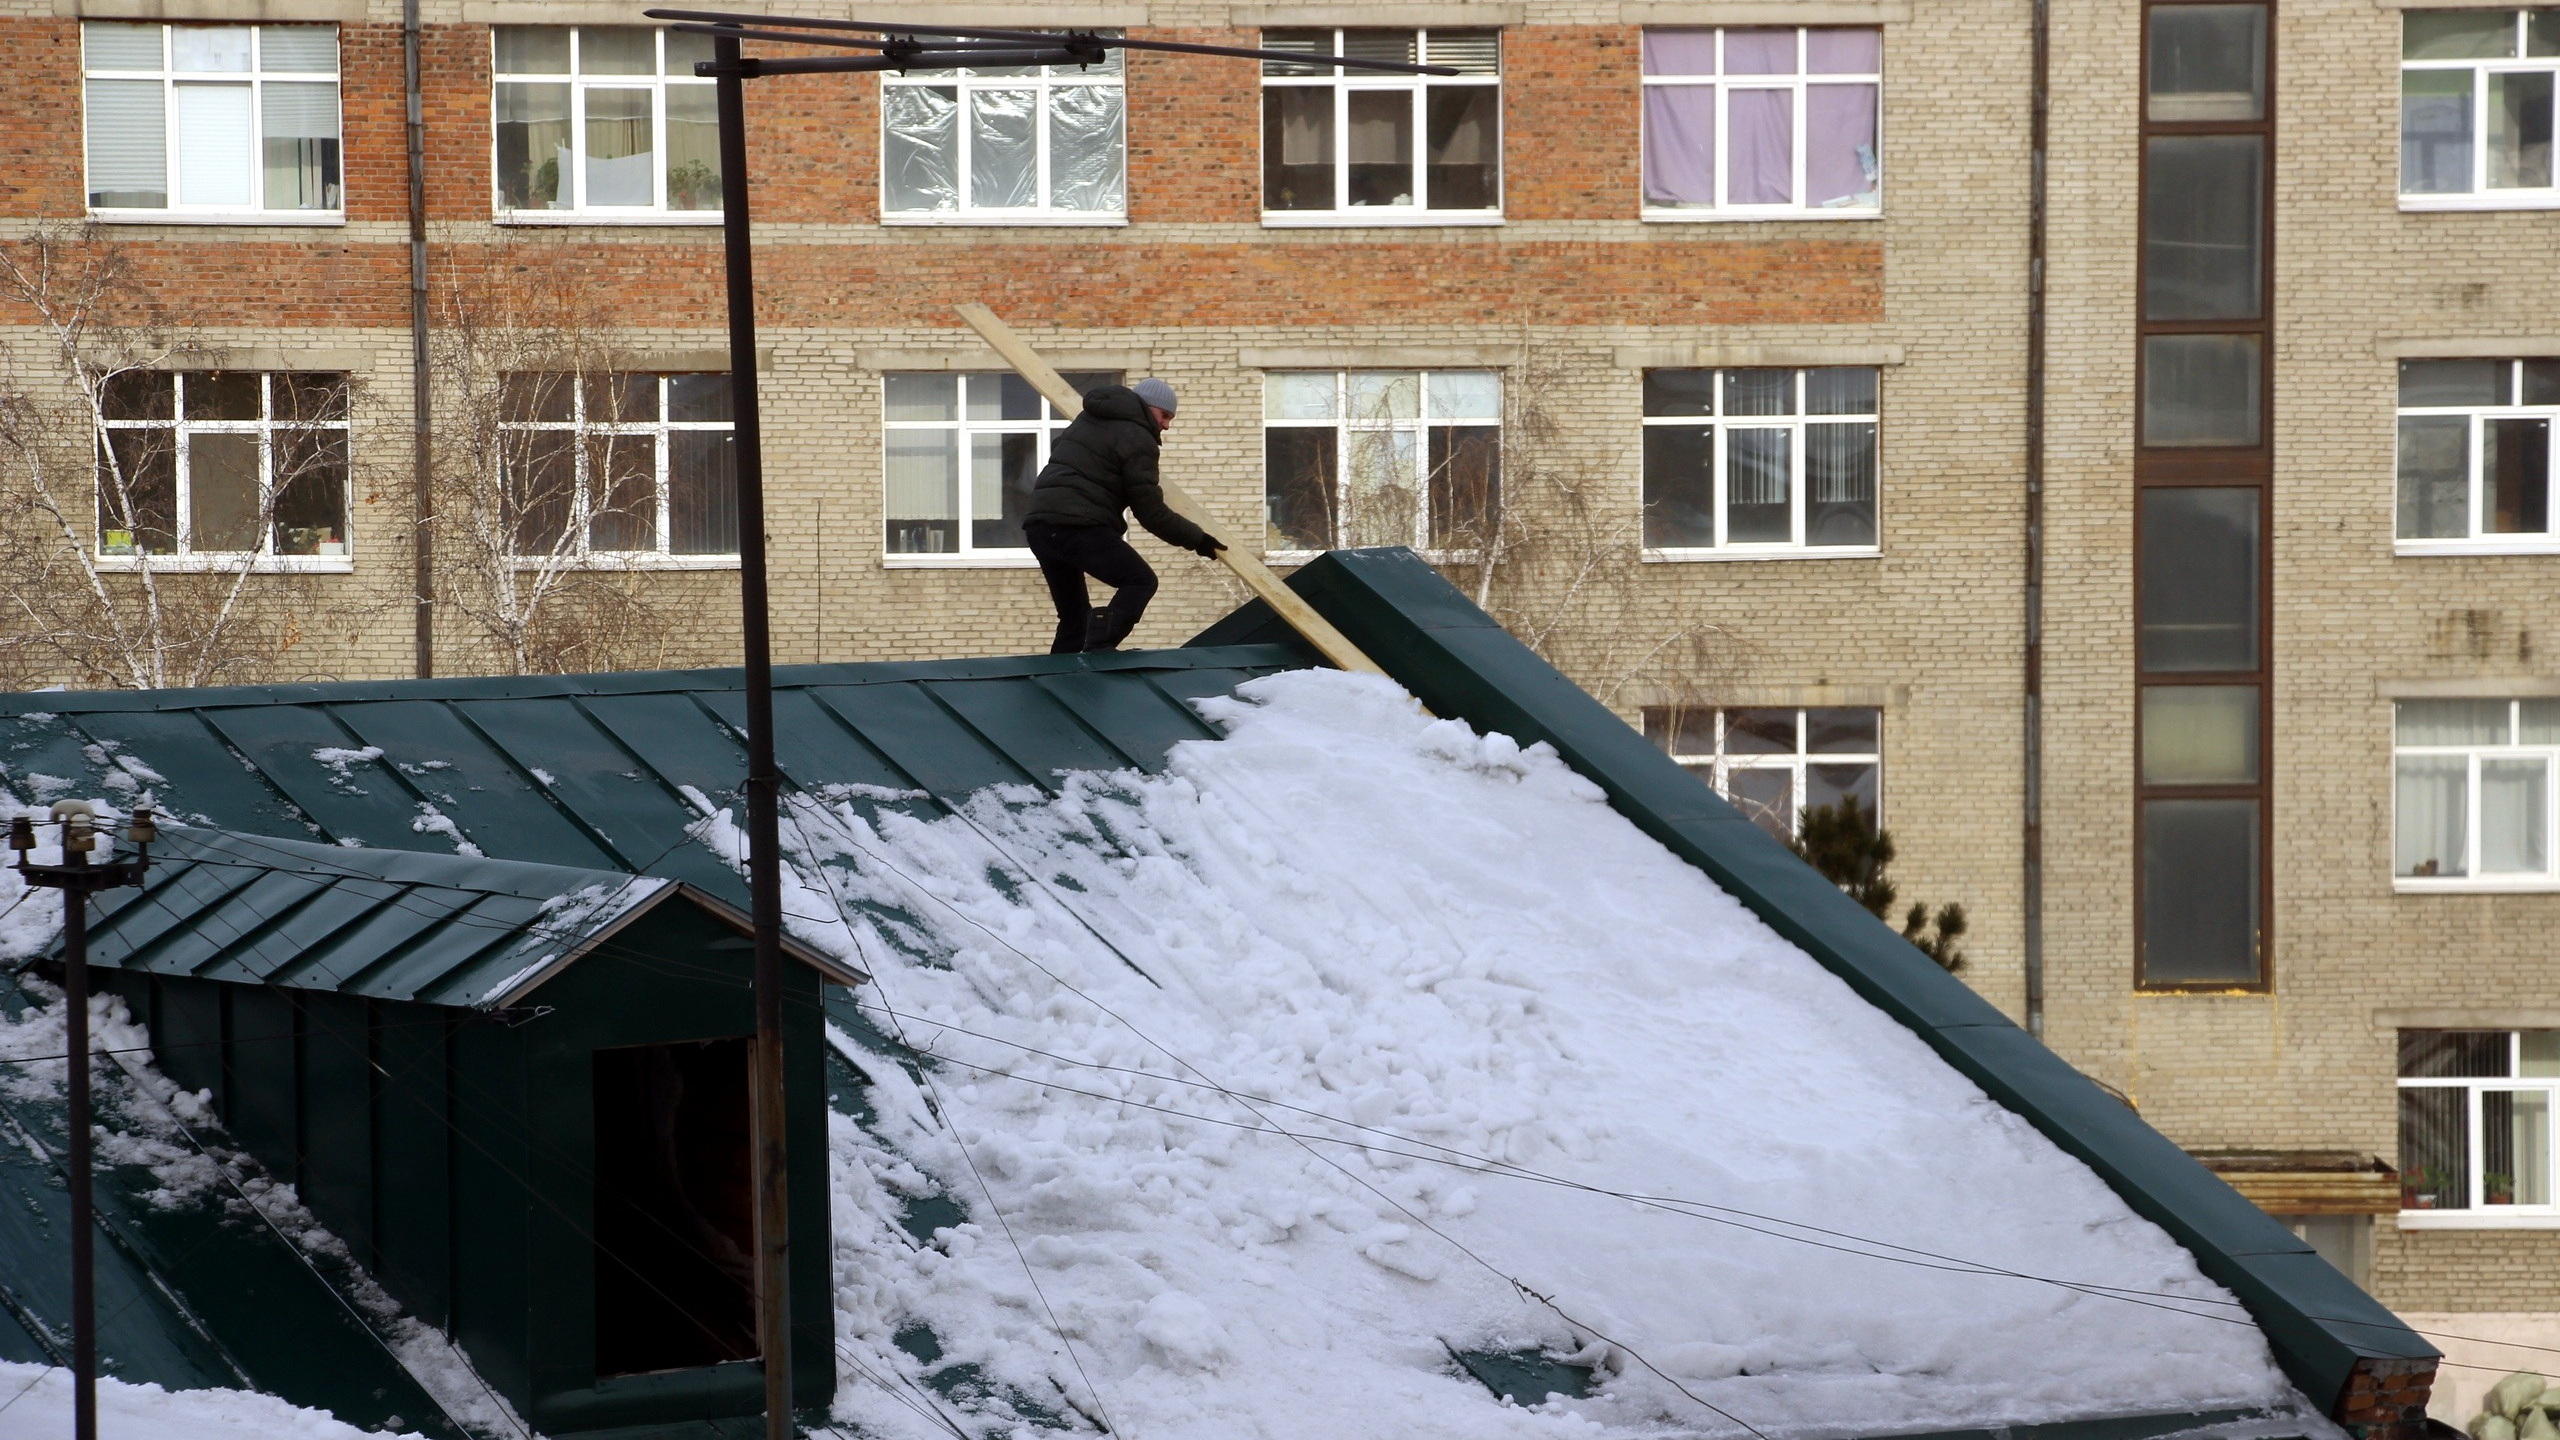 Снег с крыши на голову. Снег на крыше. Сугроб на крыше. Сугроб рядом с домом с крышей.